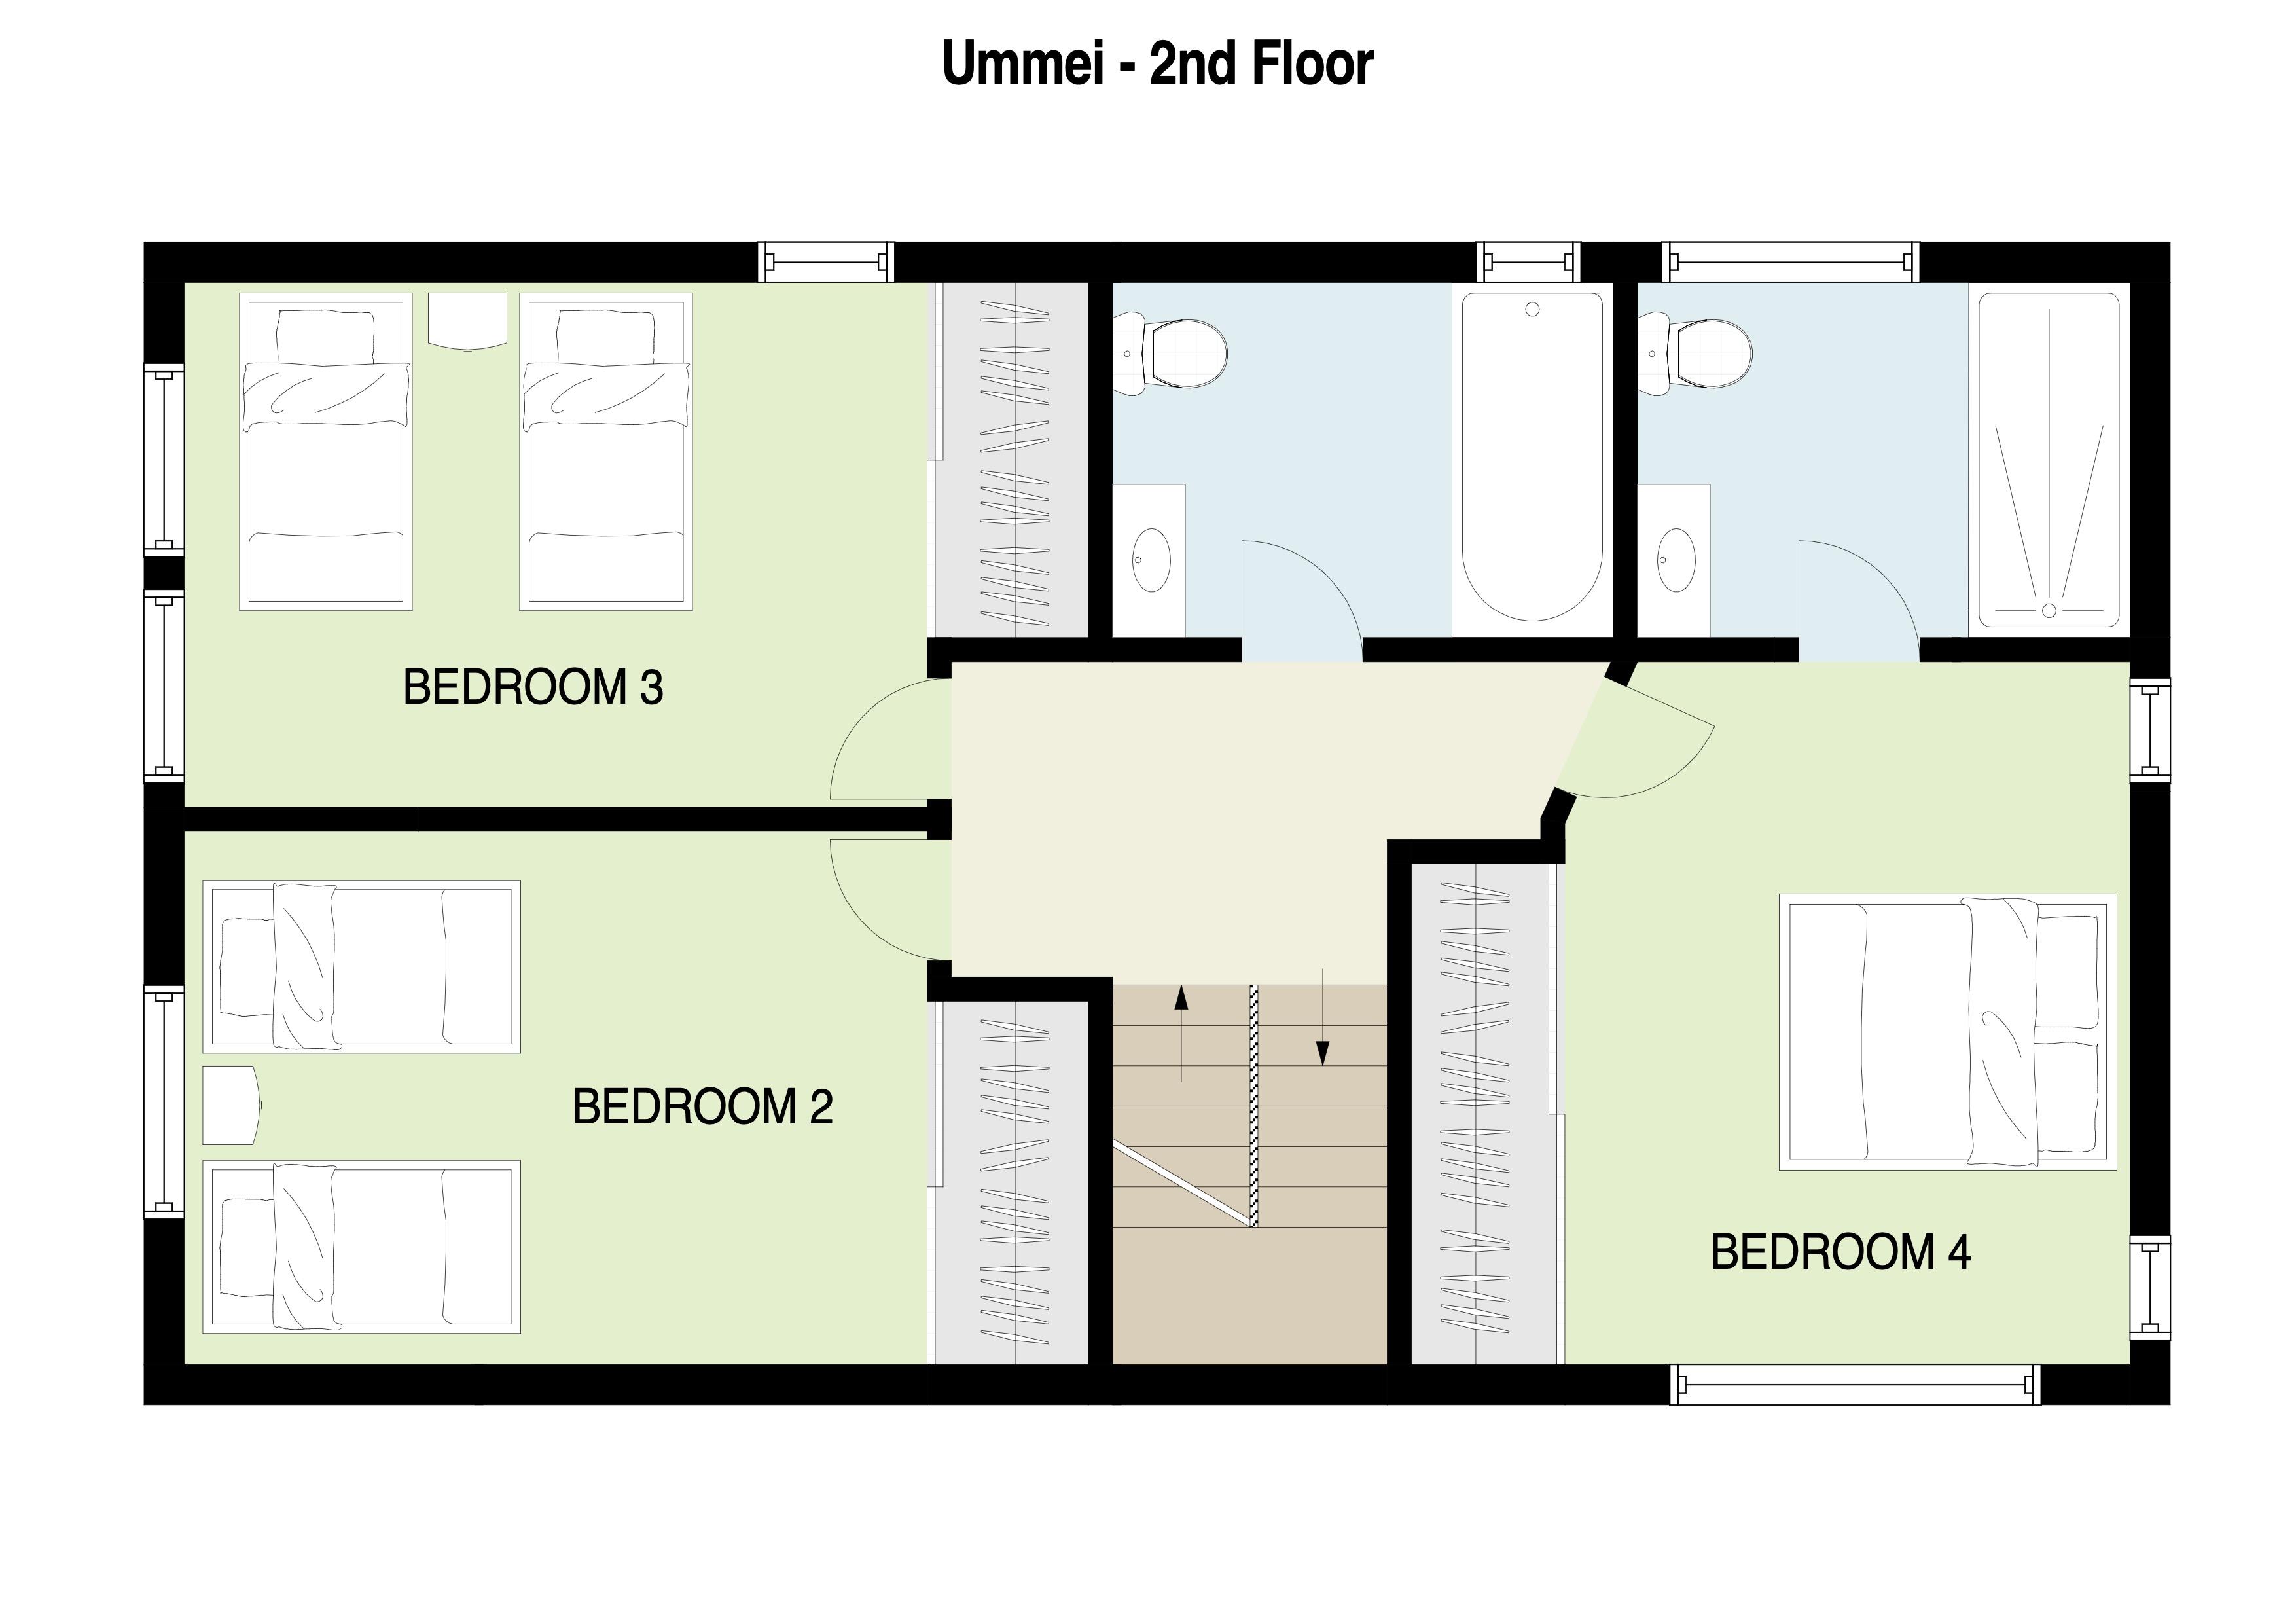 Ummei 2nd Floor Plan